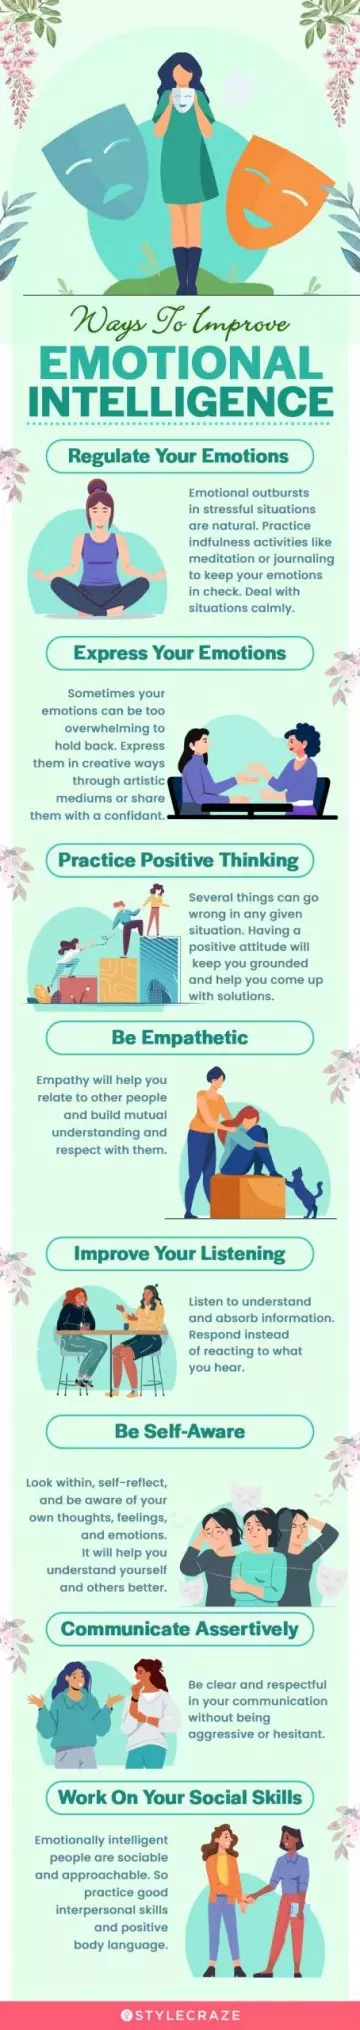 ways to improve emotional intelligence (infographic)